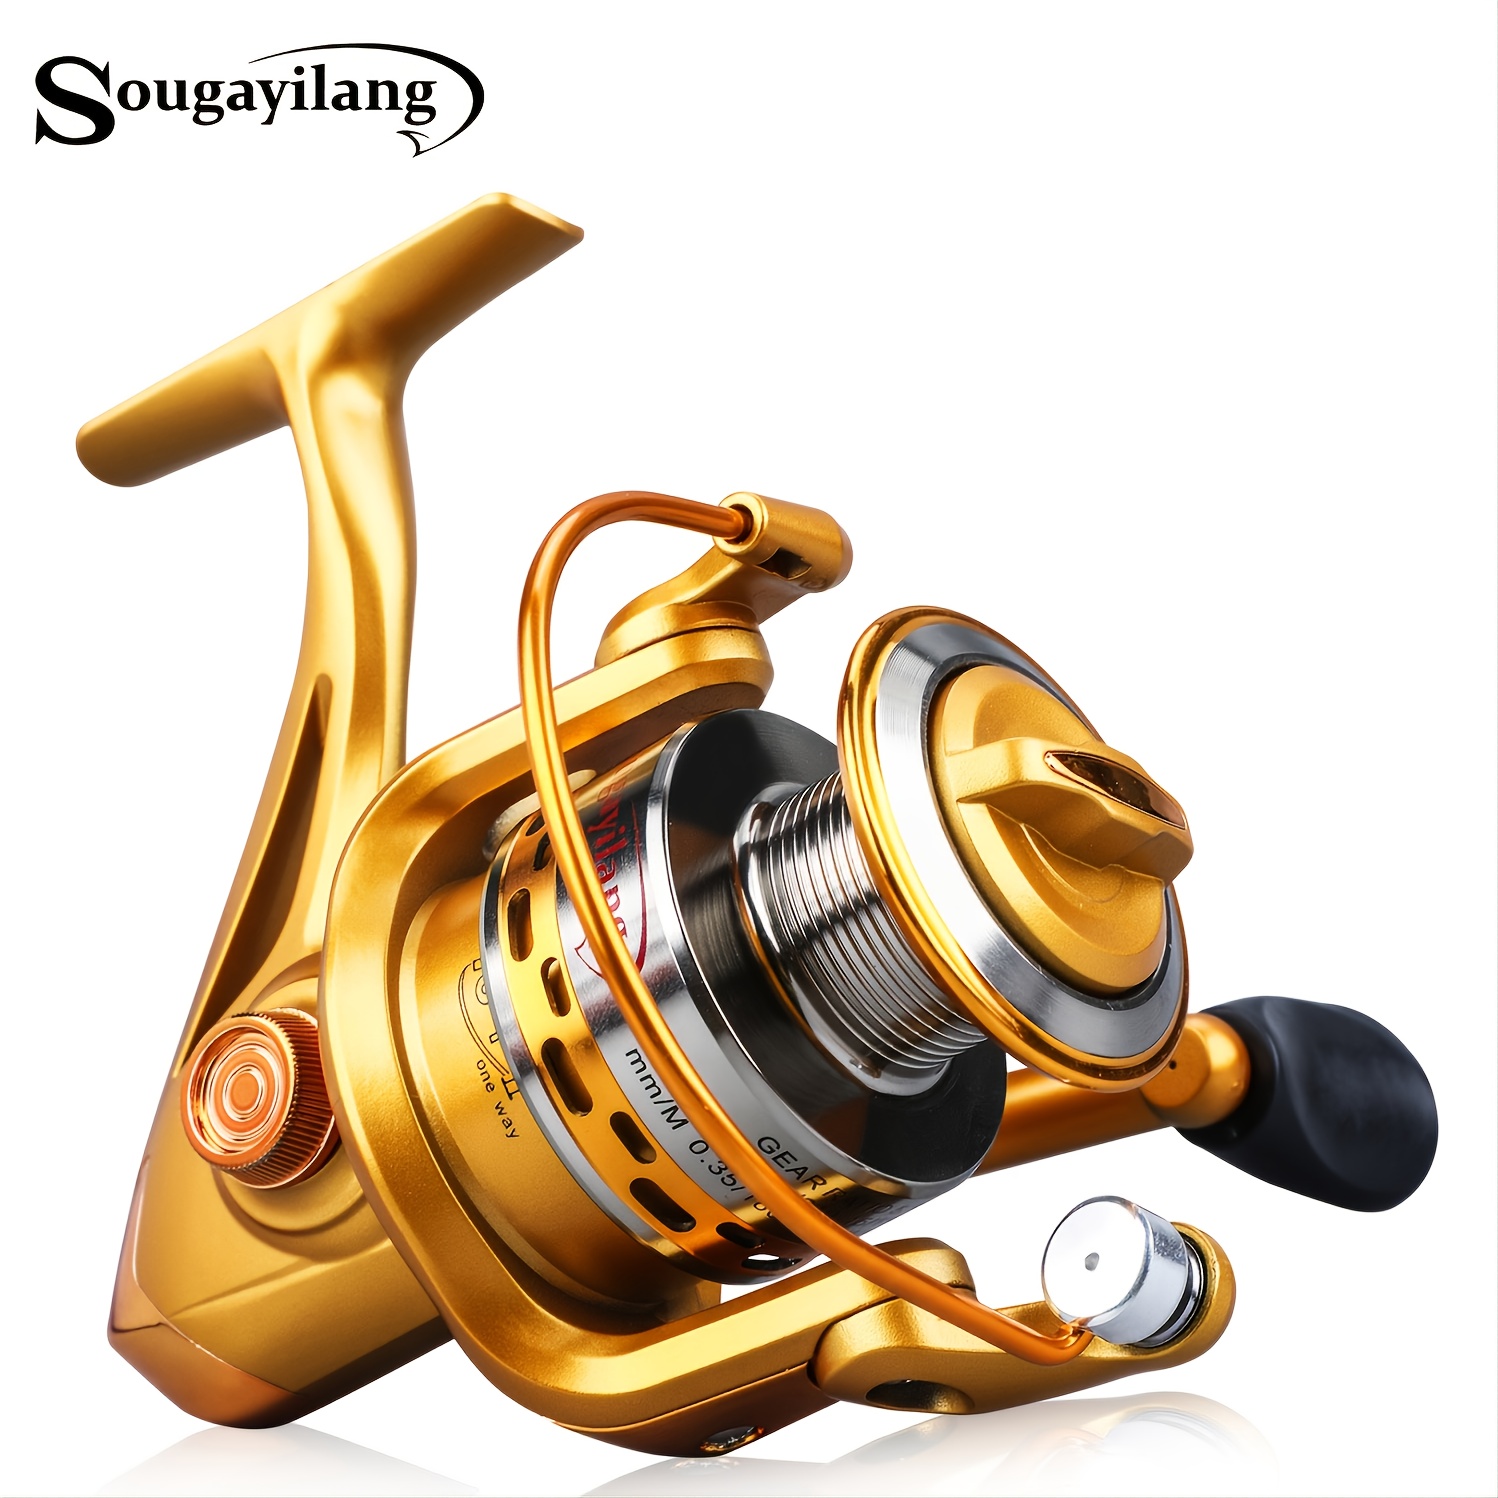  SMSOM Fishing Reel, Spinning Reels, 13+1 BB Ultralight